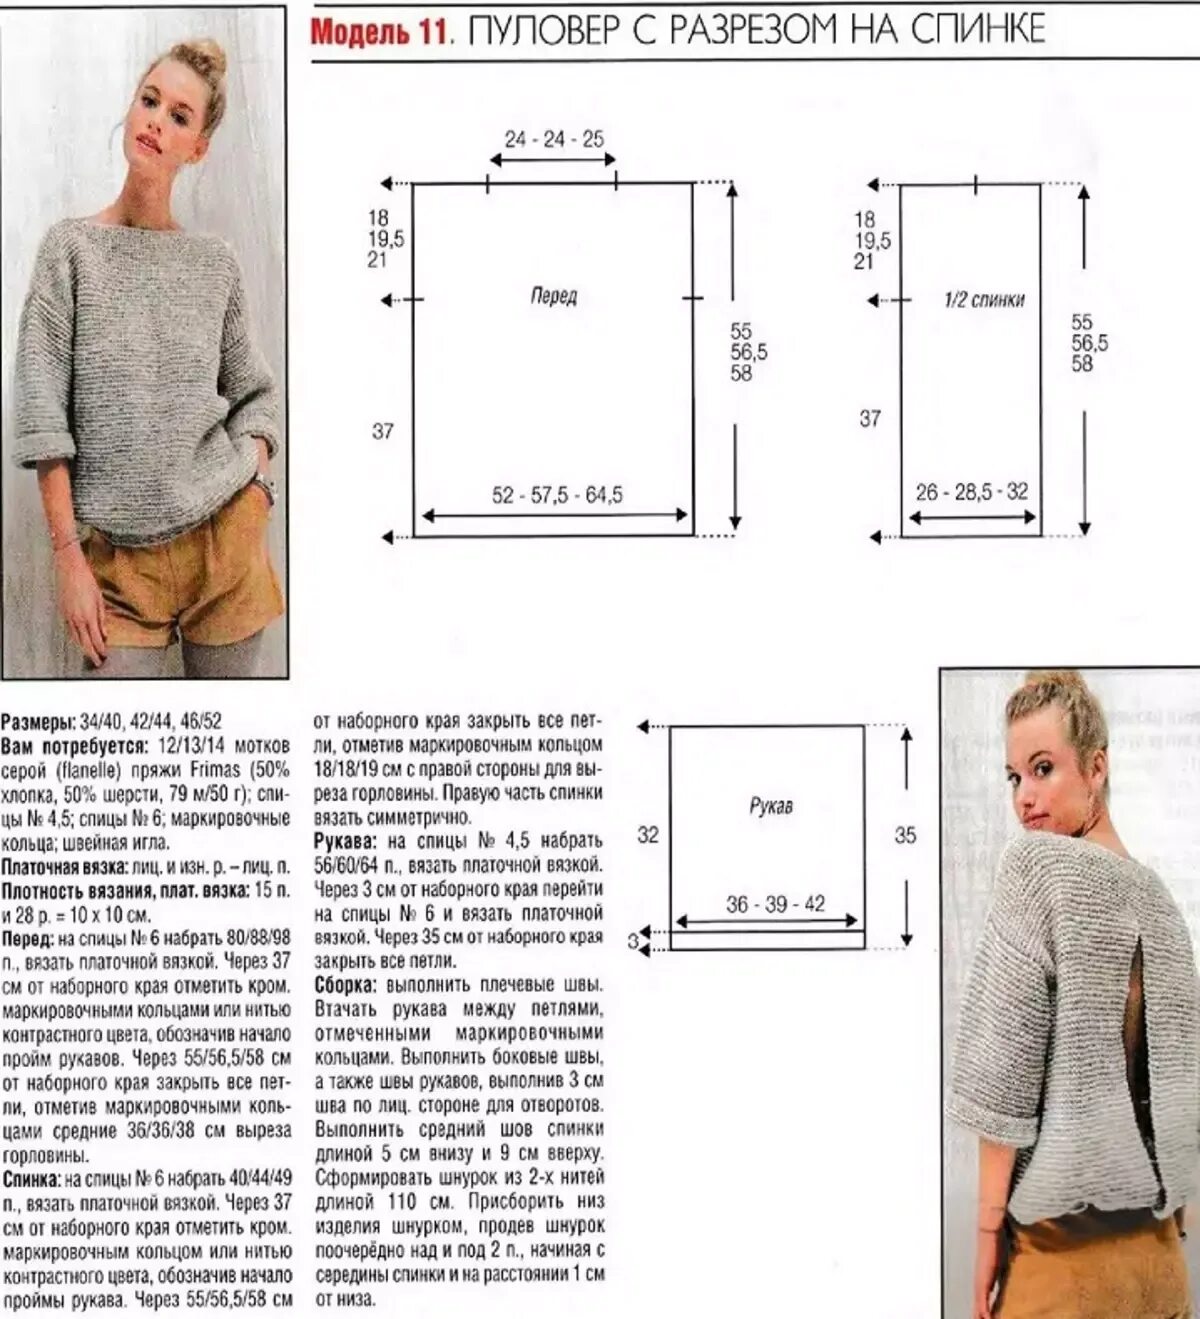 Простое модели спицами для начинающих. Свитер женский вязаный спицами с описанием для начинающих 46 размер. Схема вязания свитера спицами для женщин 42 размер. Как вязать кофту 42 размер спицами для начинающих для женщин. Схема вязания свитера оверсайз спицами.